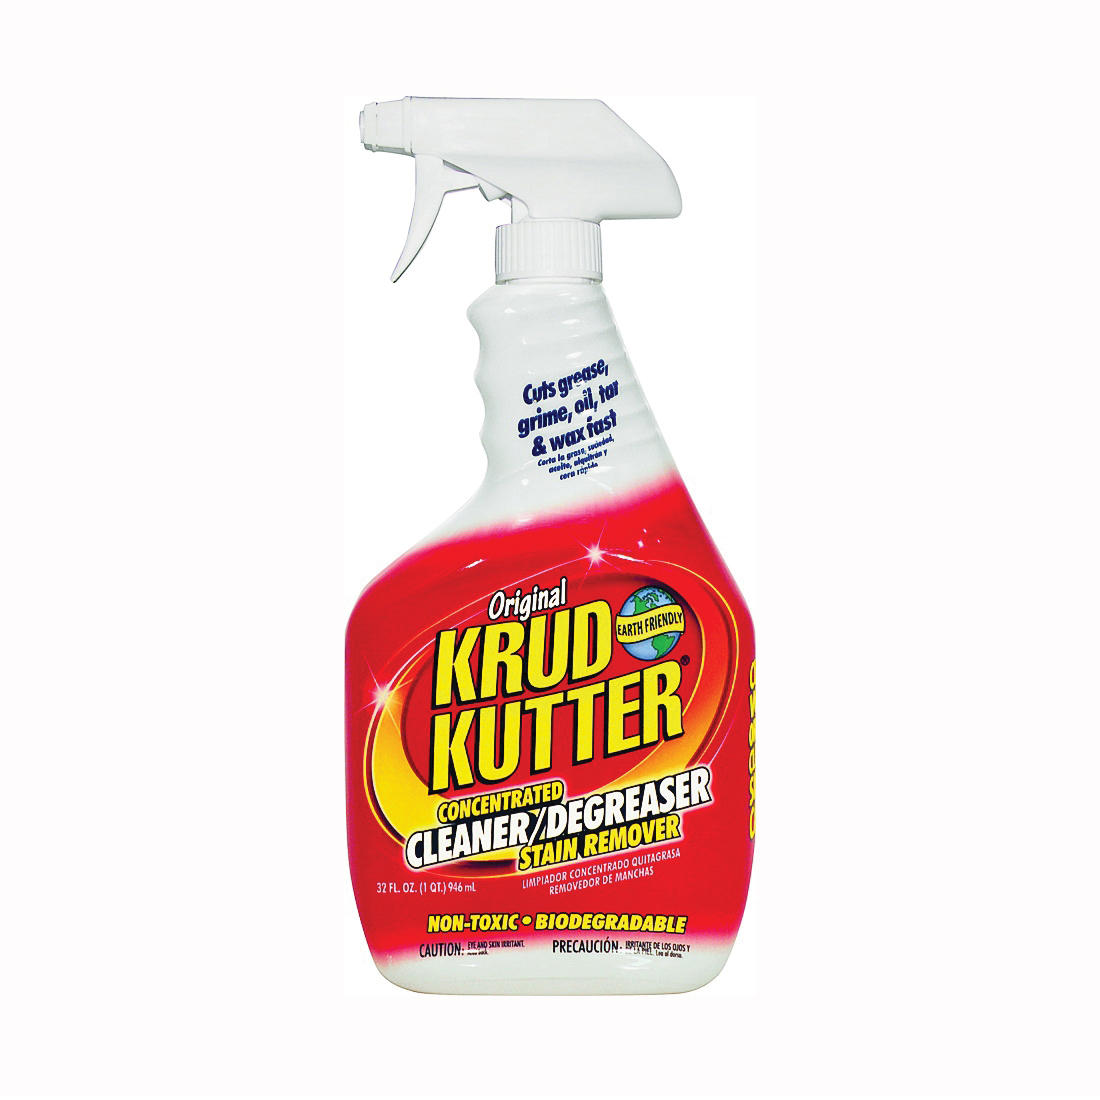 KK326 Cleaner/Degreaser and Stain Remover, 32 oz Spray Dispenser, Liquid, Mild